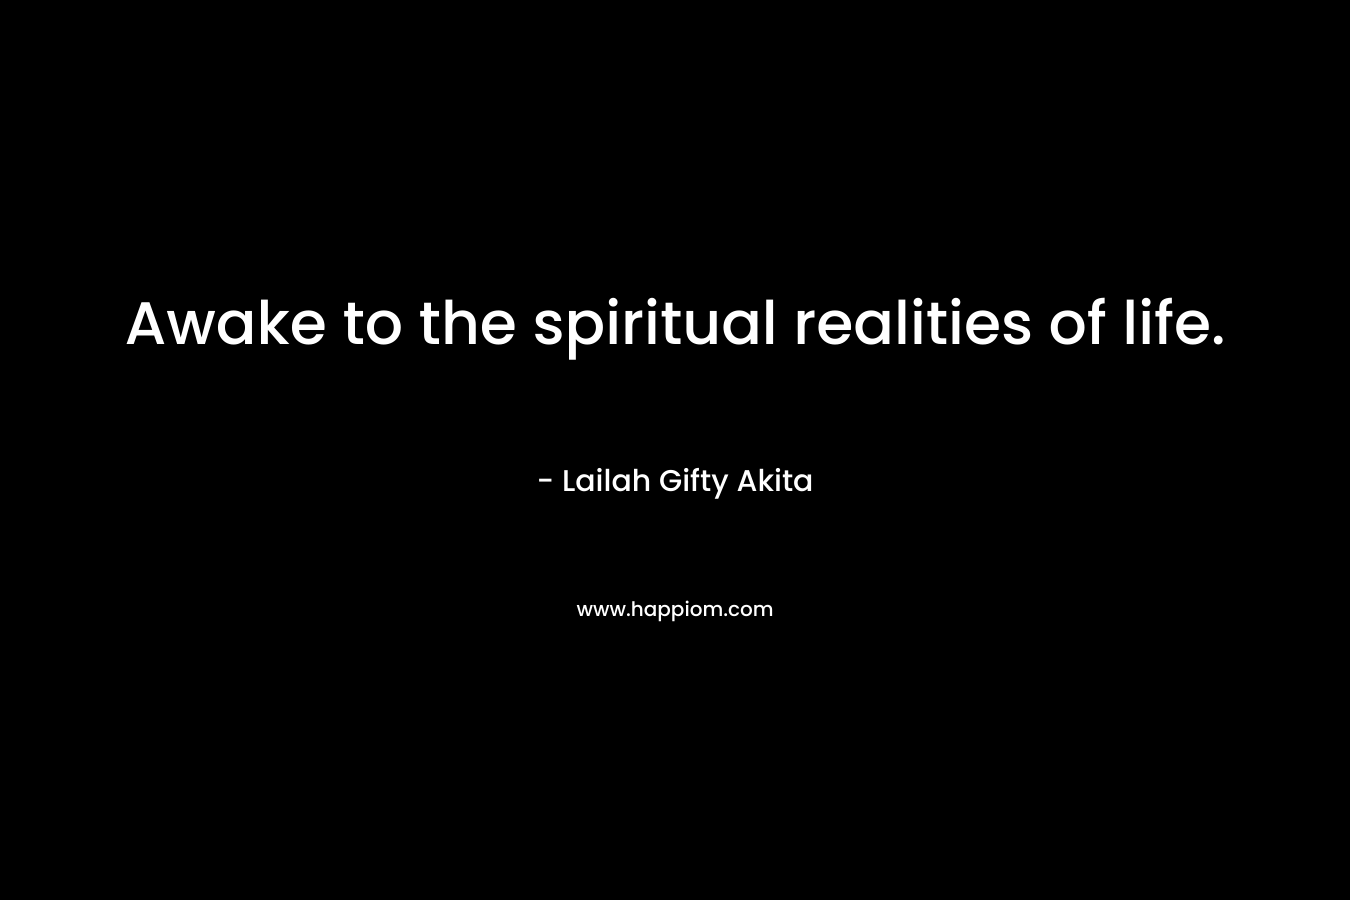 Awake to the spiritual realities of life.